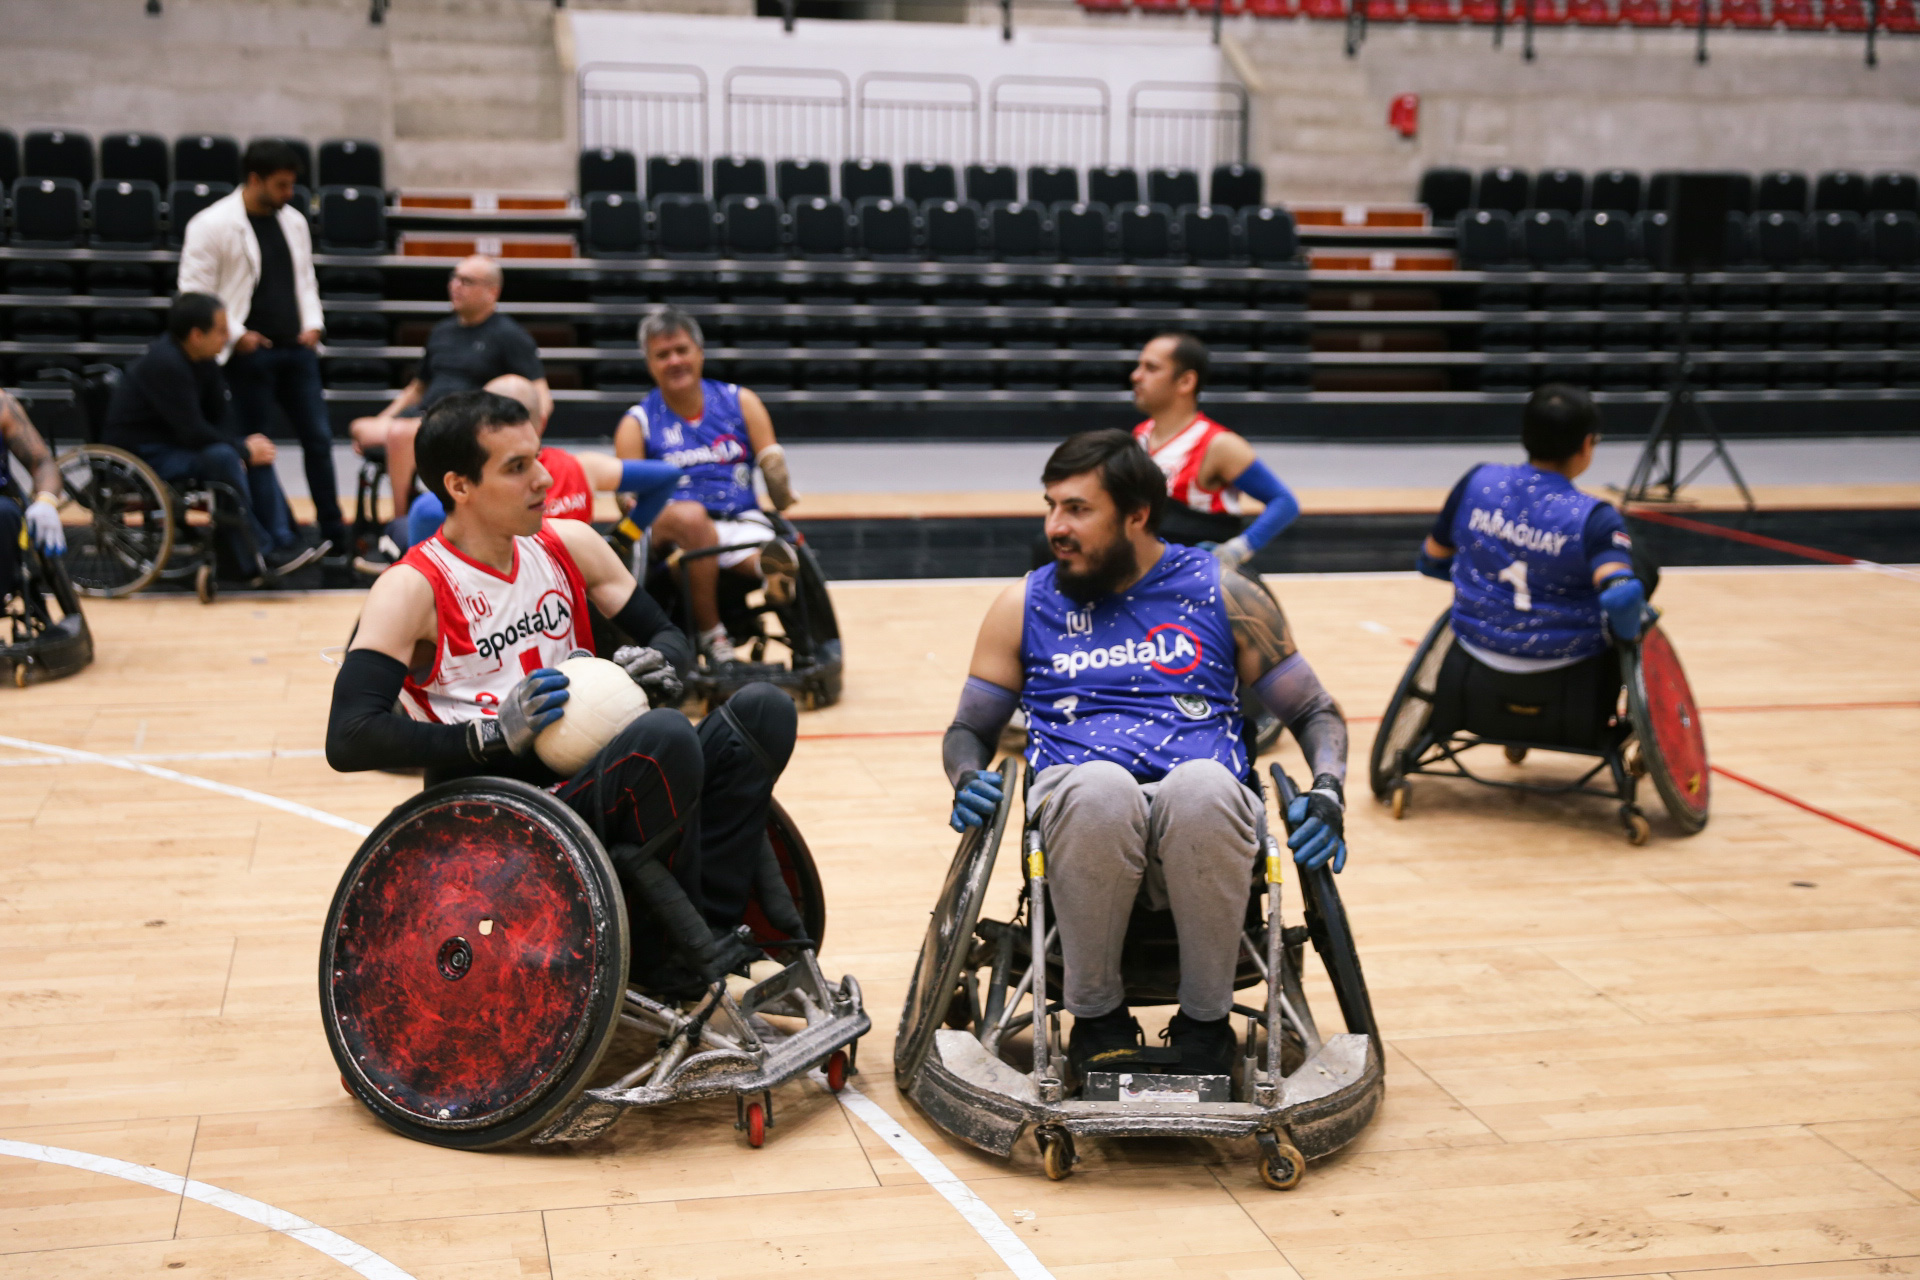 Al término de la actividad, se disputó un encuentro de exhibición de rugby en silla de ruedas, donde participaron los YakaRuedas y el equipo de Aposta.la. Foto: Gentileza.